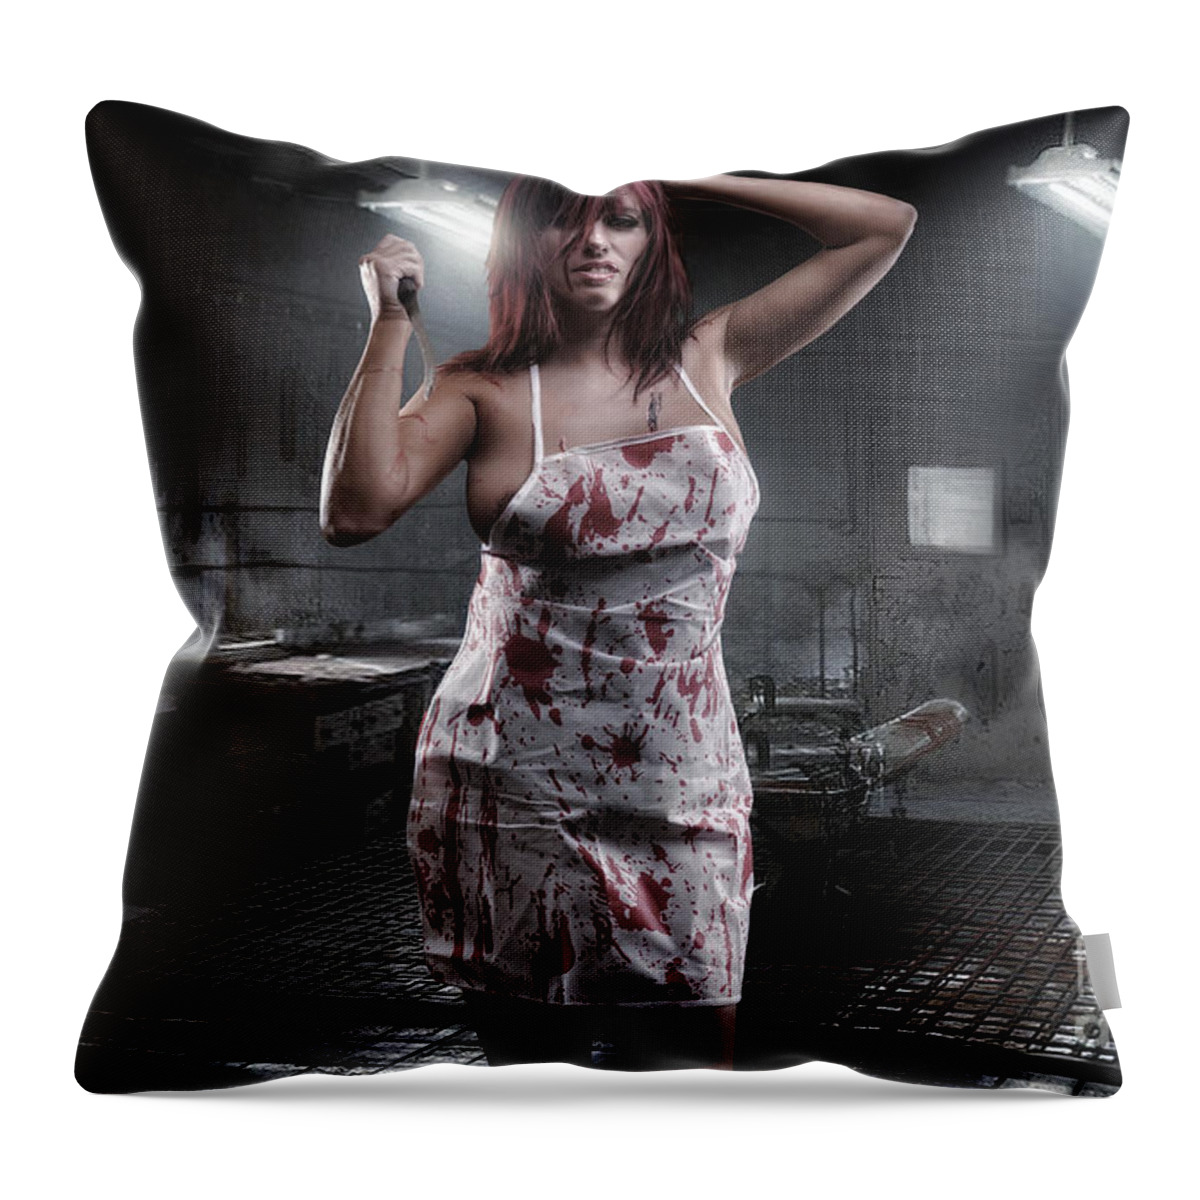 Yhun Suarez Throw Pillow featuring the photograph Miss Mutilator by Yhun Suarez